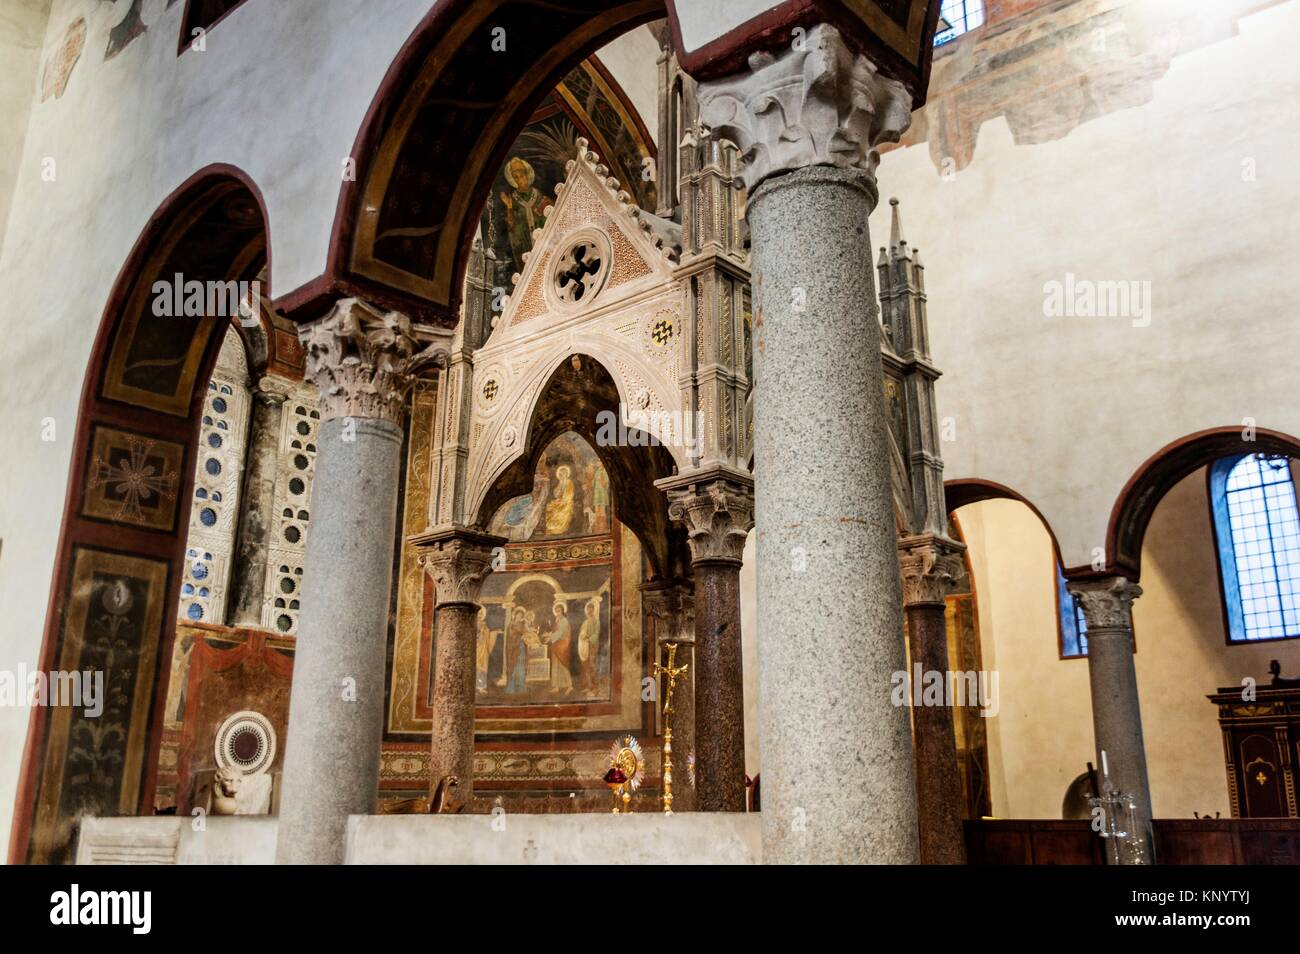 Santa Maria in Cosmedin (Basilica of Saint Mary in Cosmedin), Rome, Italy Stock Photo